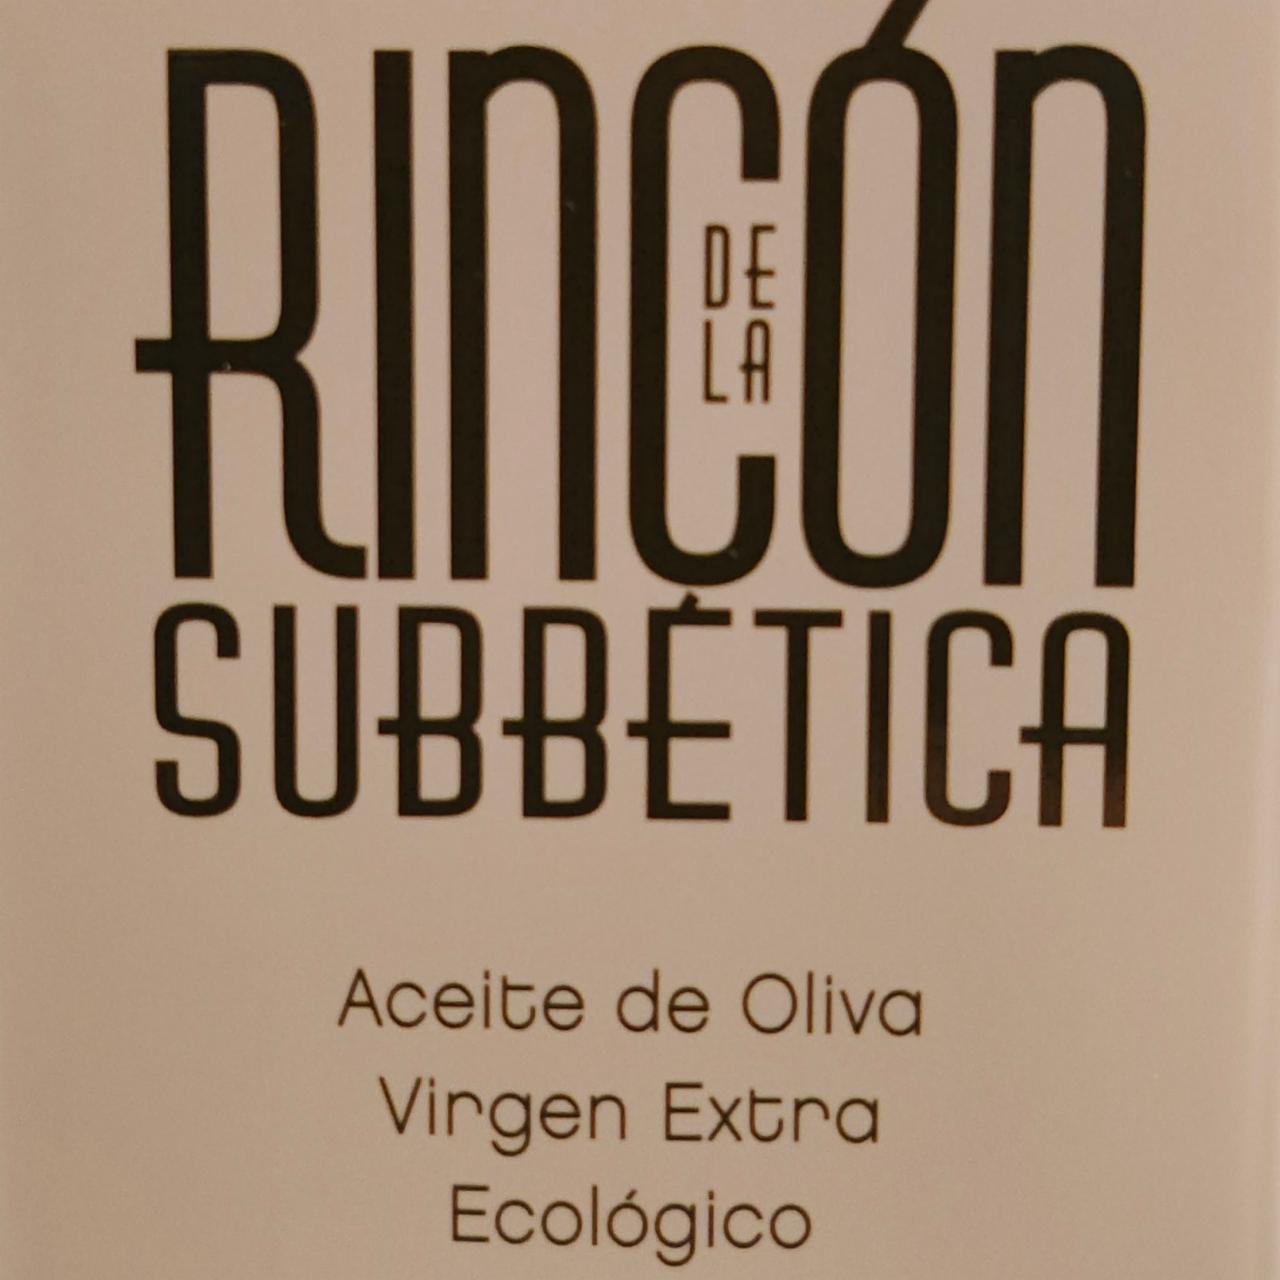 Zdjęcia - Oliwa Extra Virgin Rincon De la Subbetica